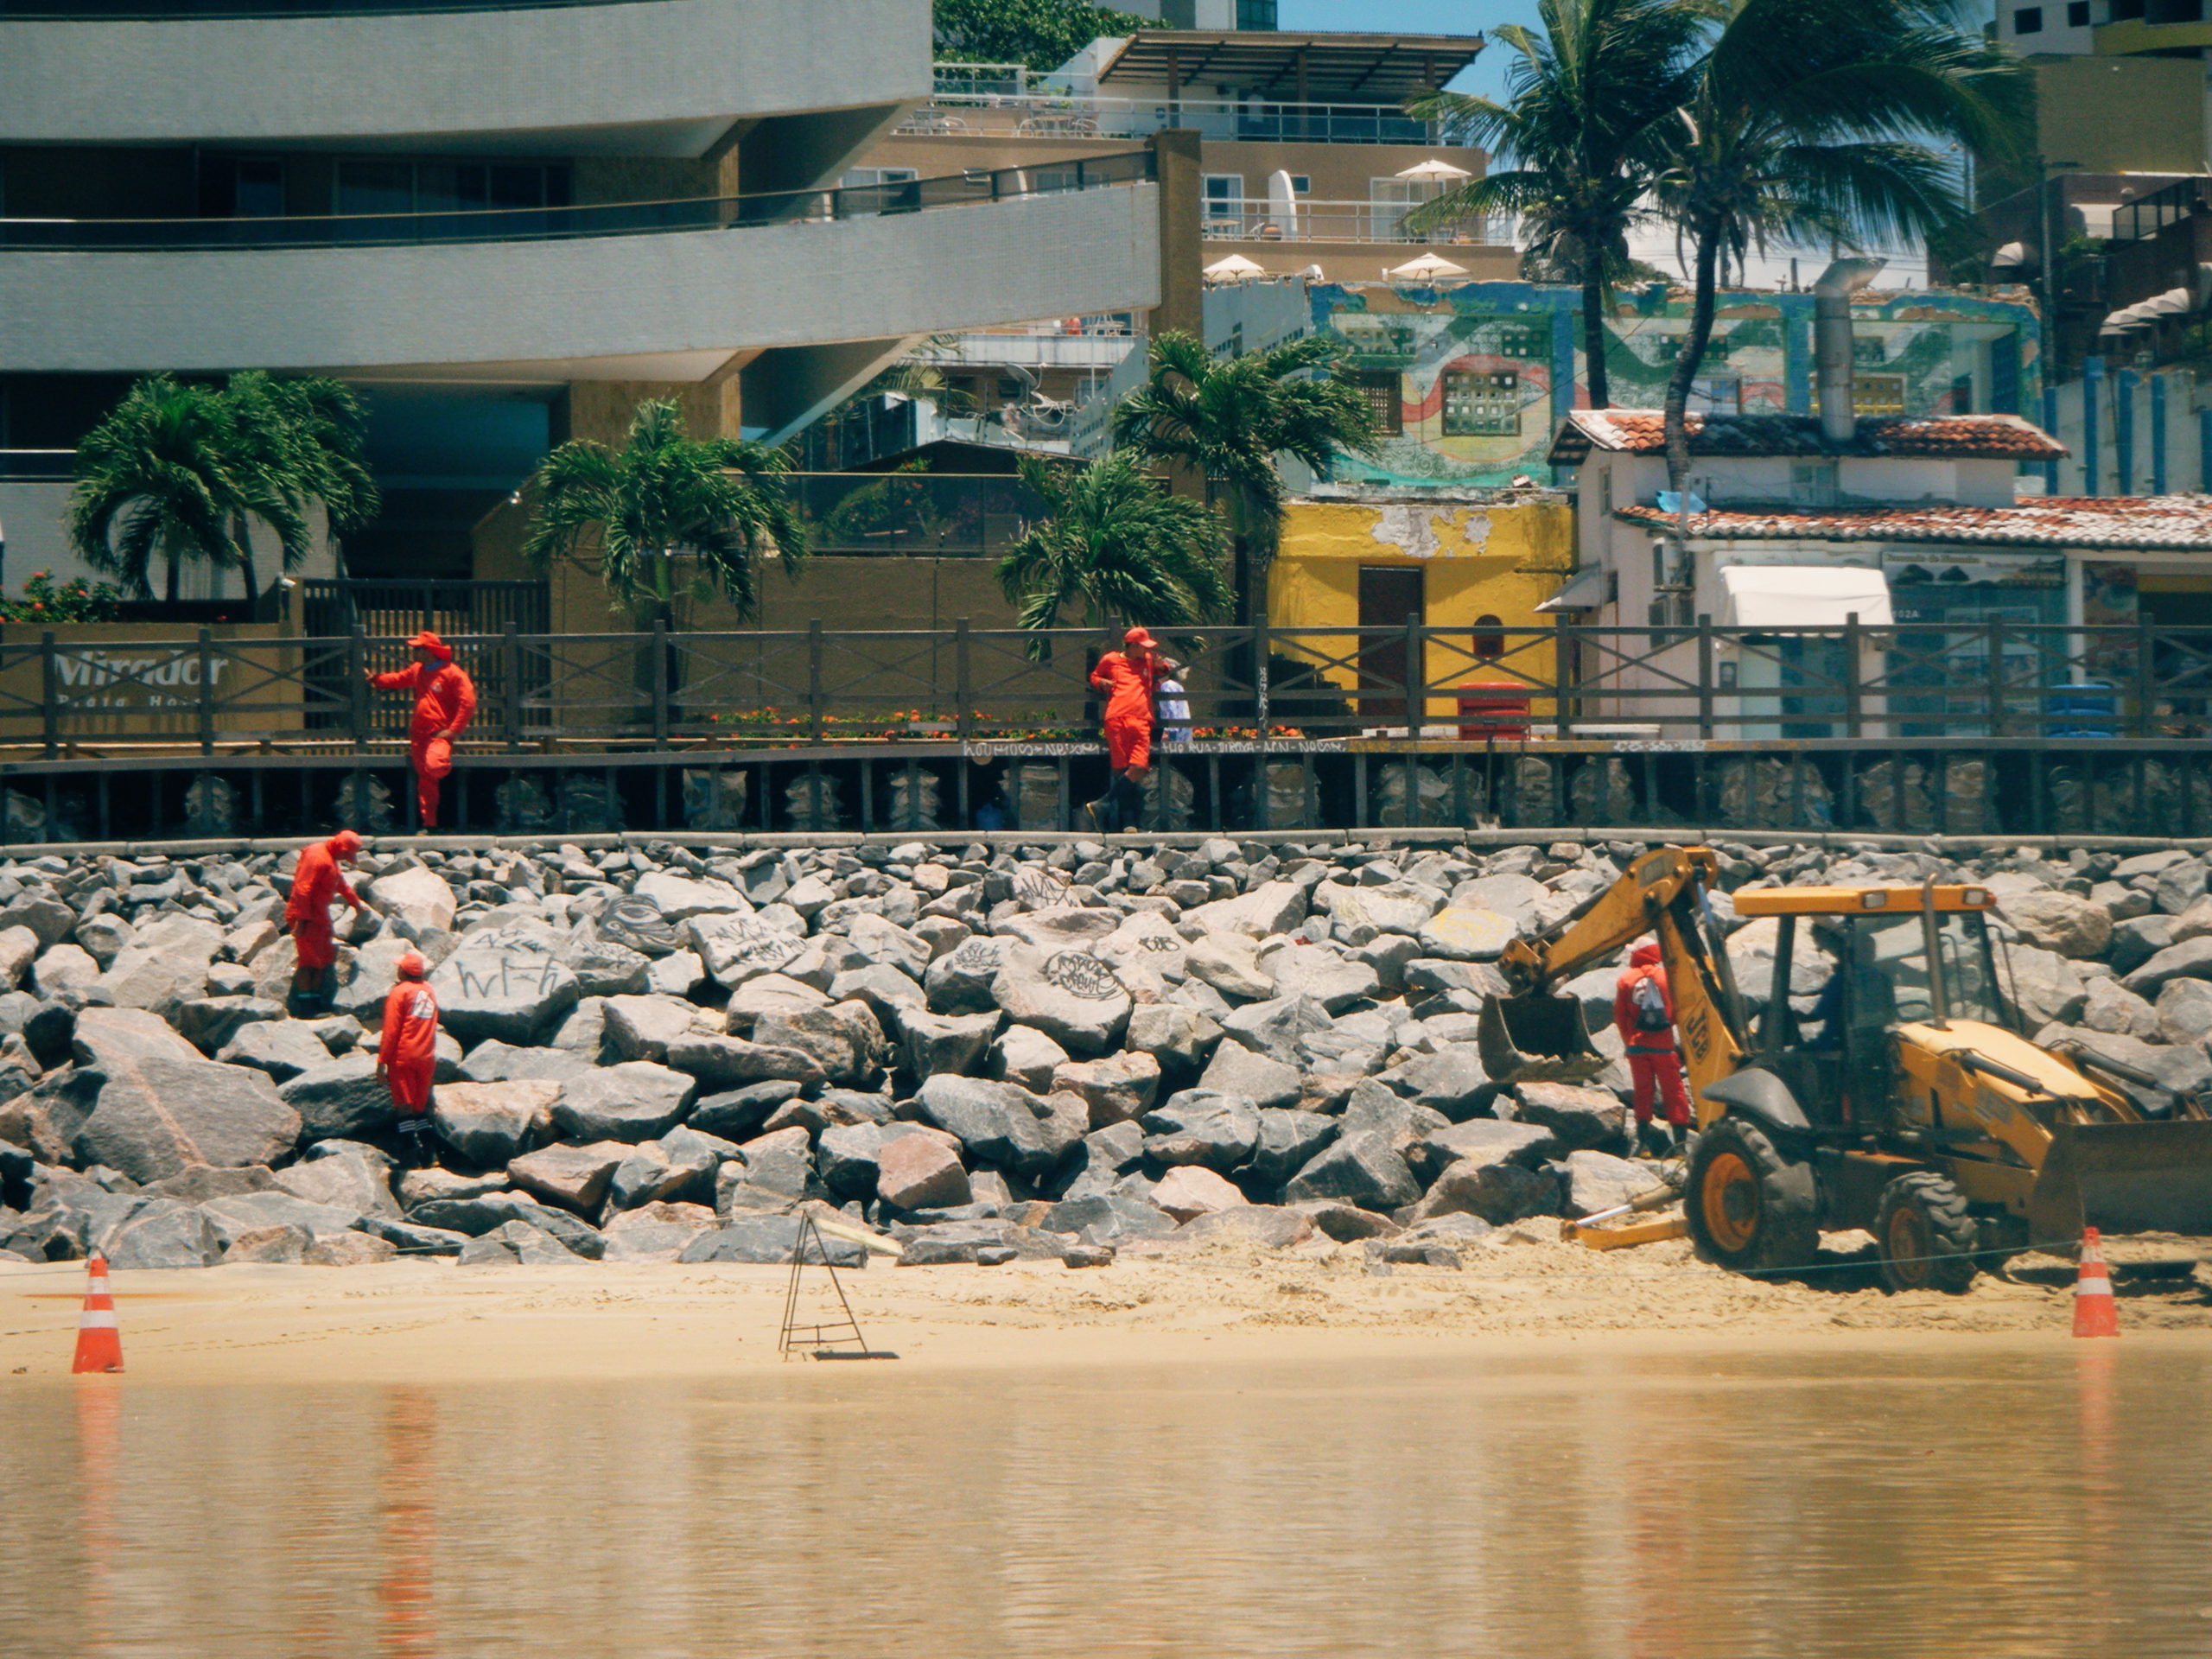 Engorda e drenagem da praia de Ponta Negra serão apresentadas em audiência  pública - Ponta Negra News